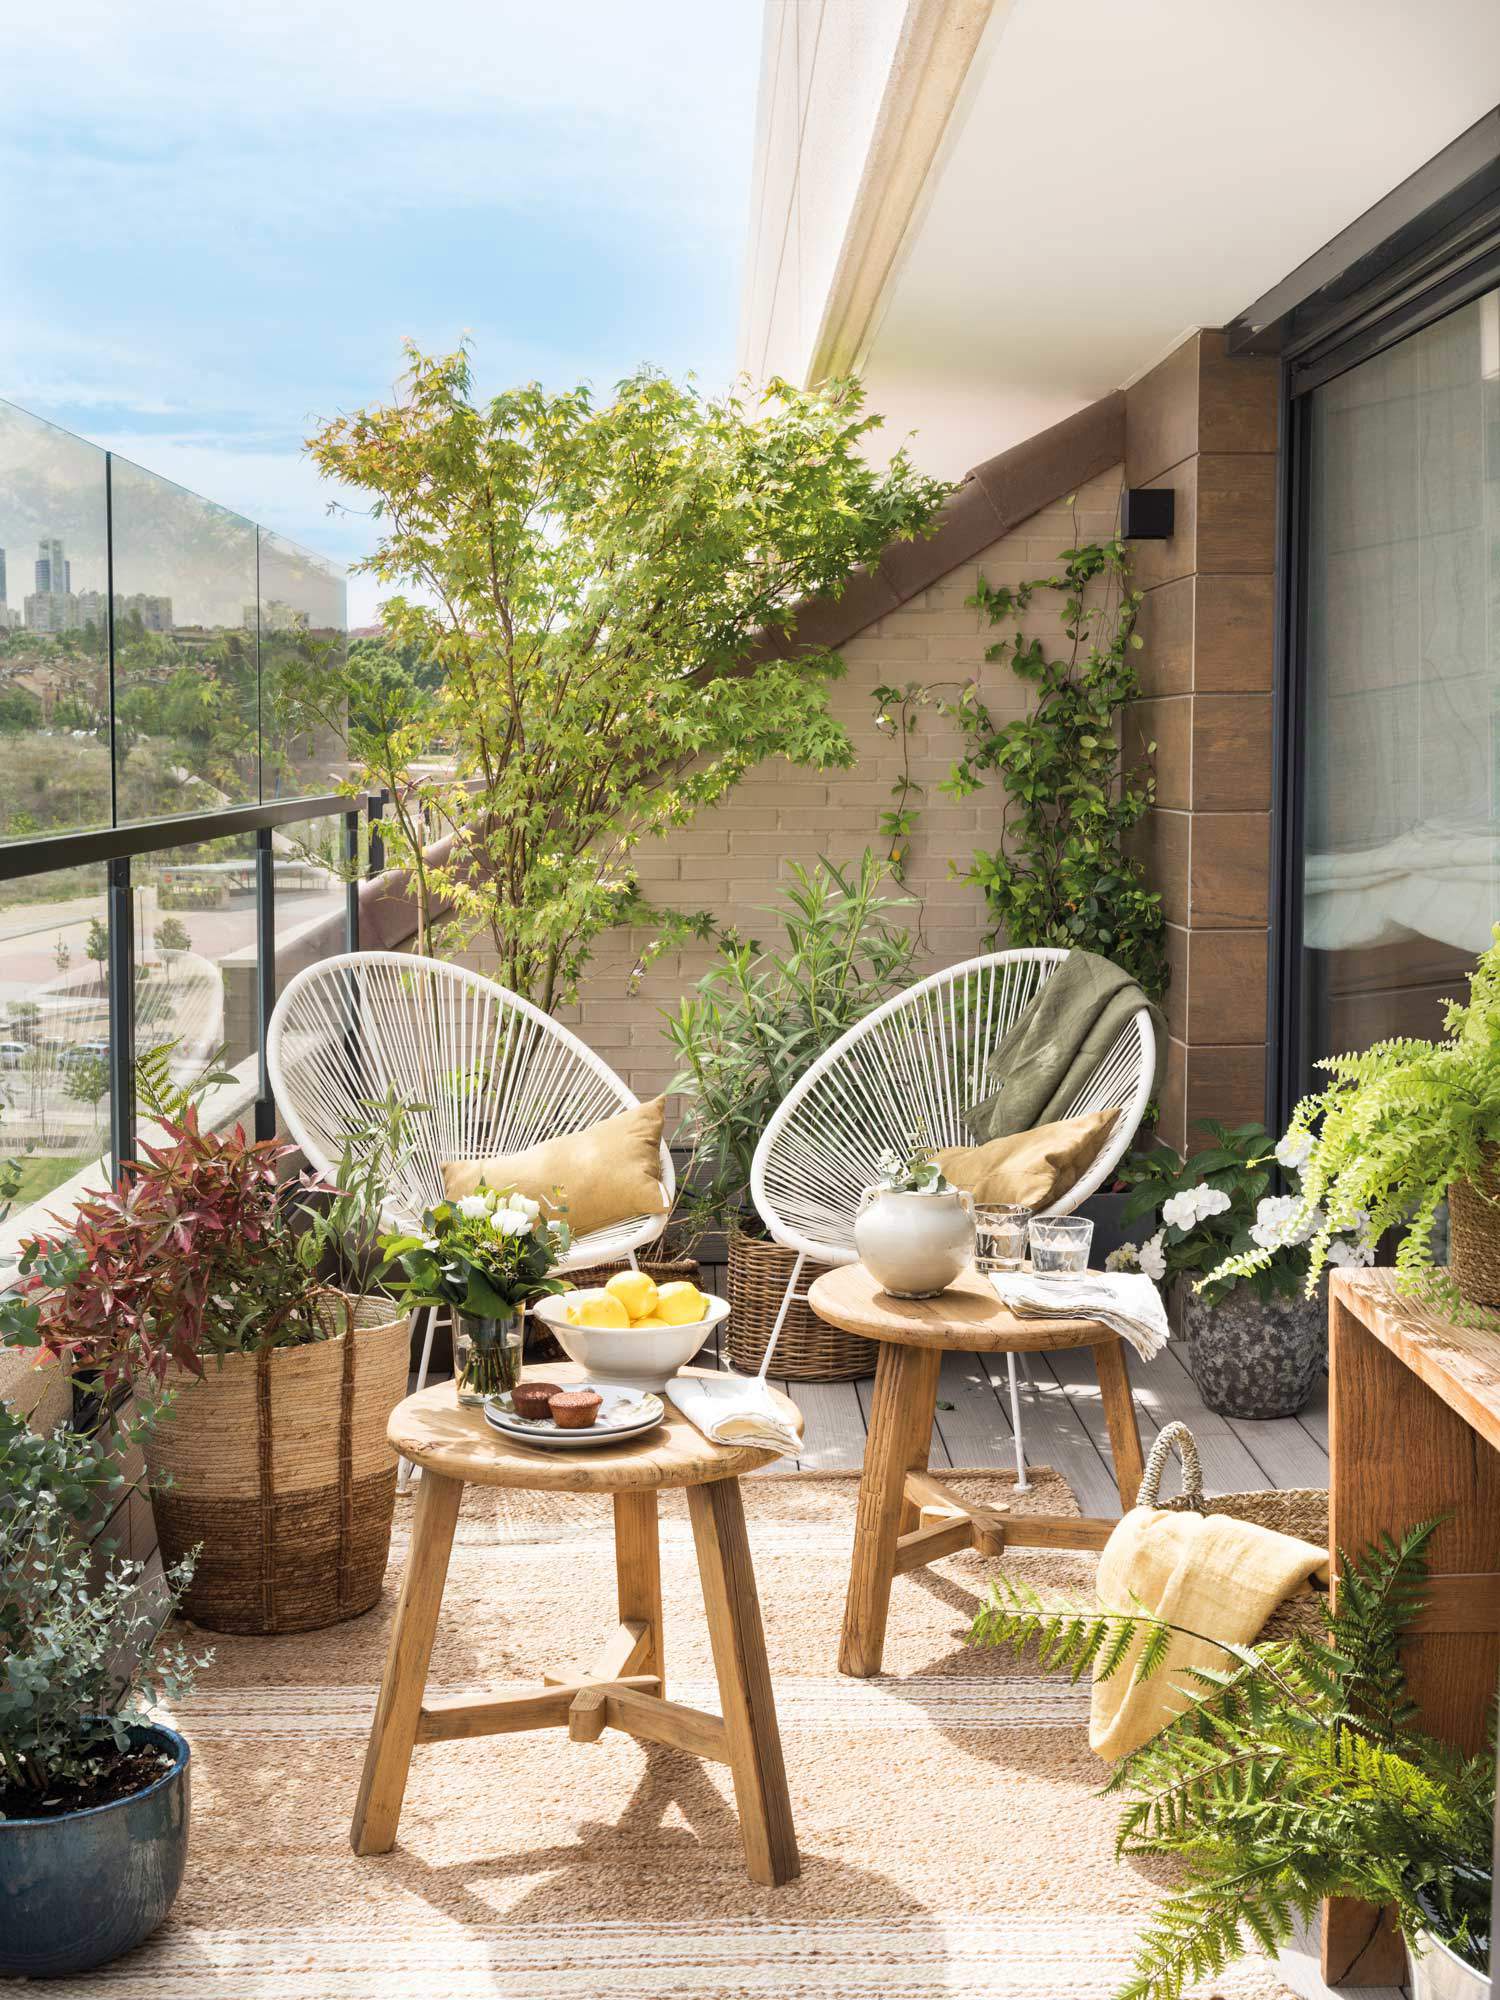 Terraza con sillas Acapulco blancas, mesas auxiliares de madera y plantas.